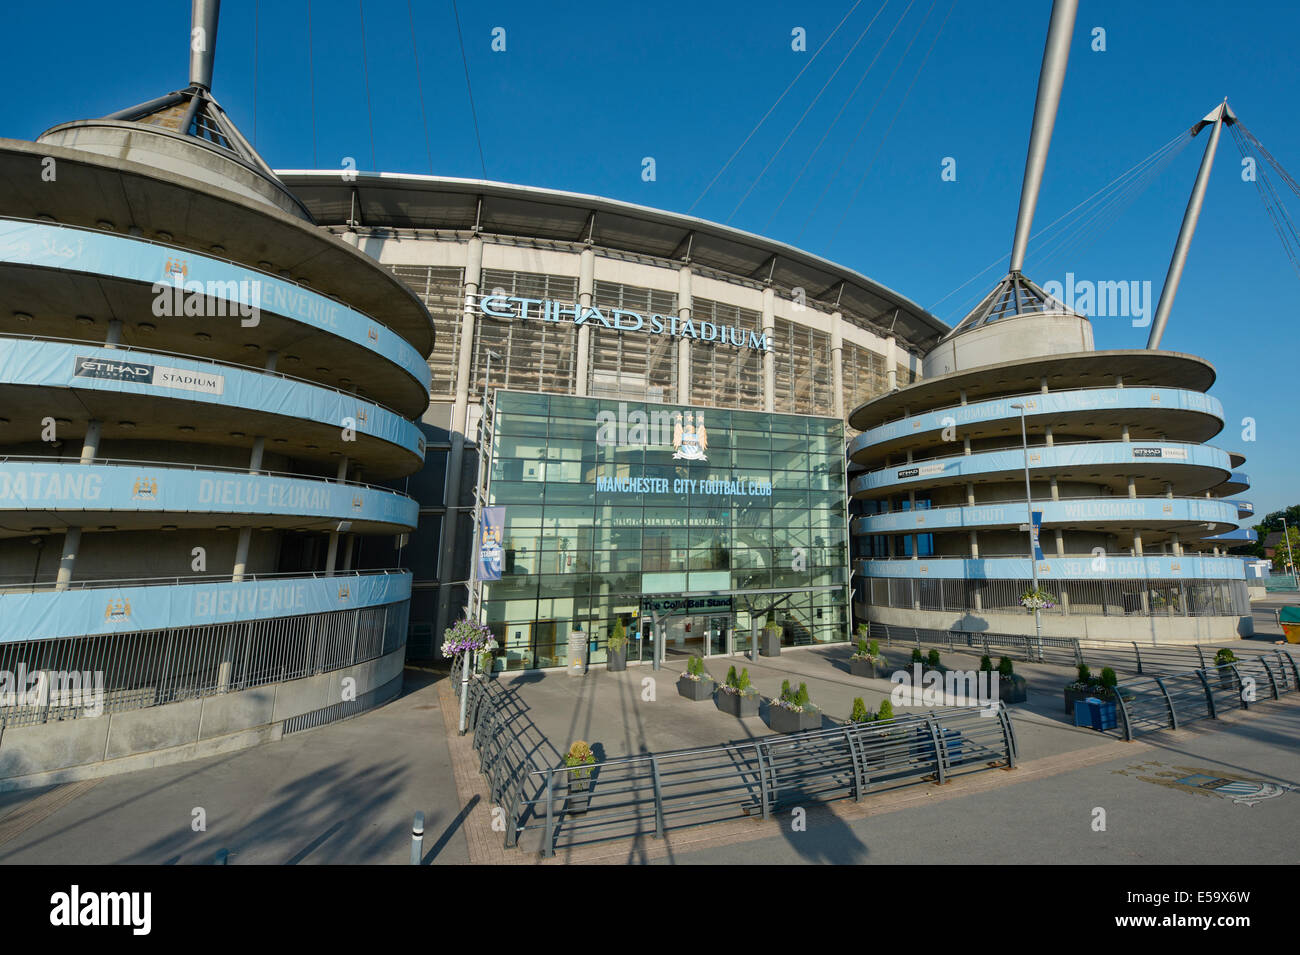 Una vista externa del Etihad Stadium, hogar de Barclays Premier League club Manchester City Football Club (sólo para uso editorial). Foto de stock